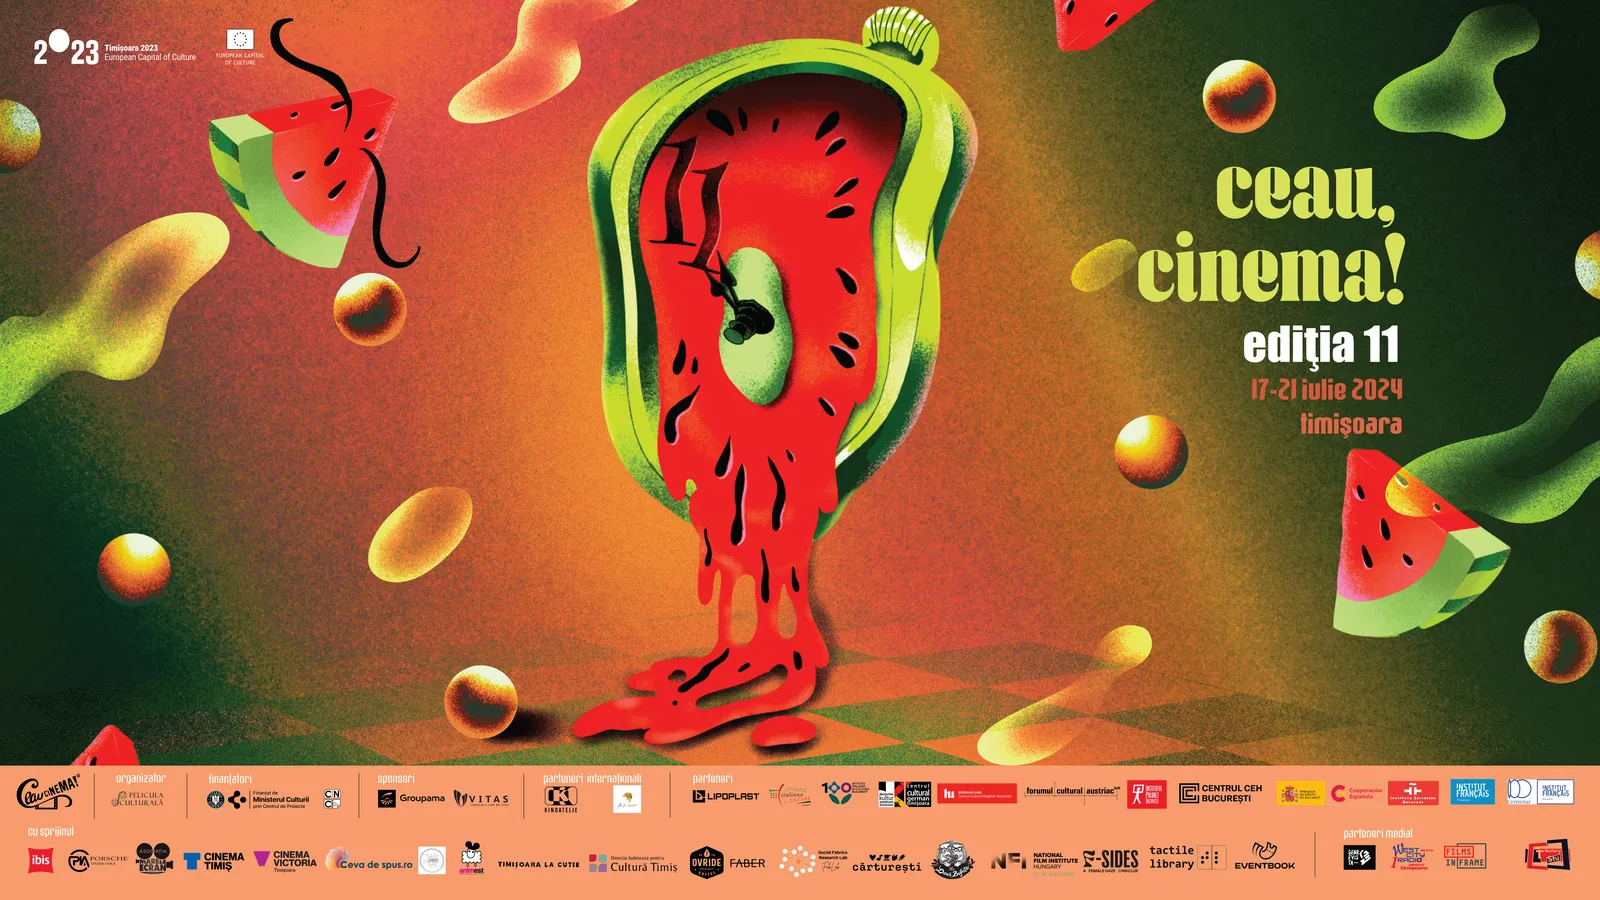 Festivalul de Film Ceau, Cinema! Ediția a 11-a